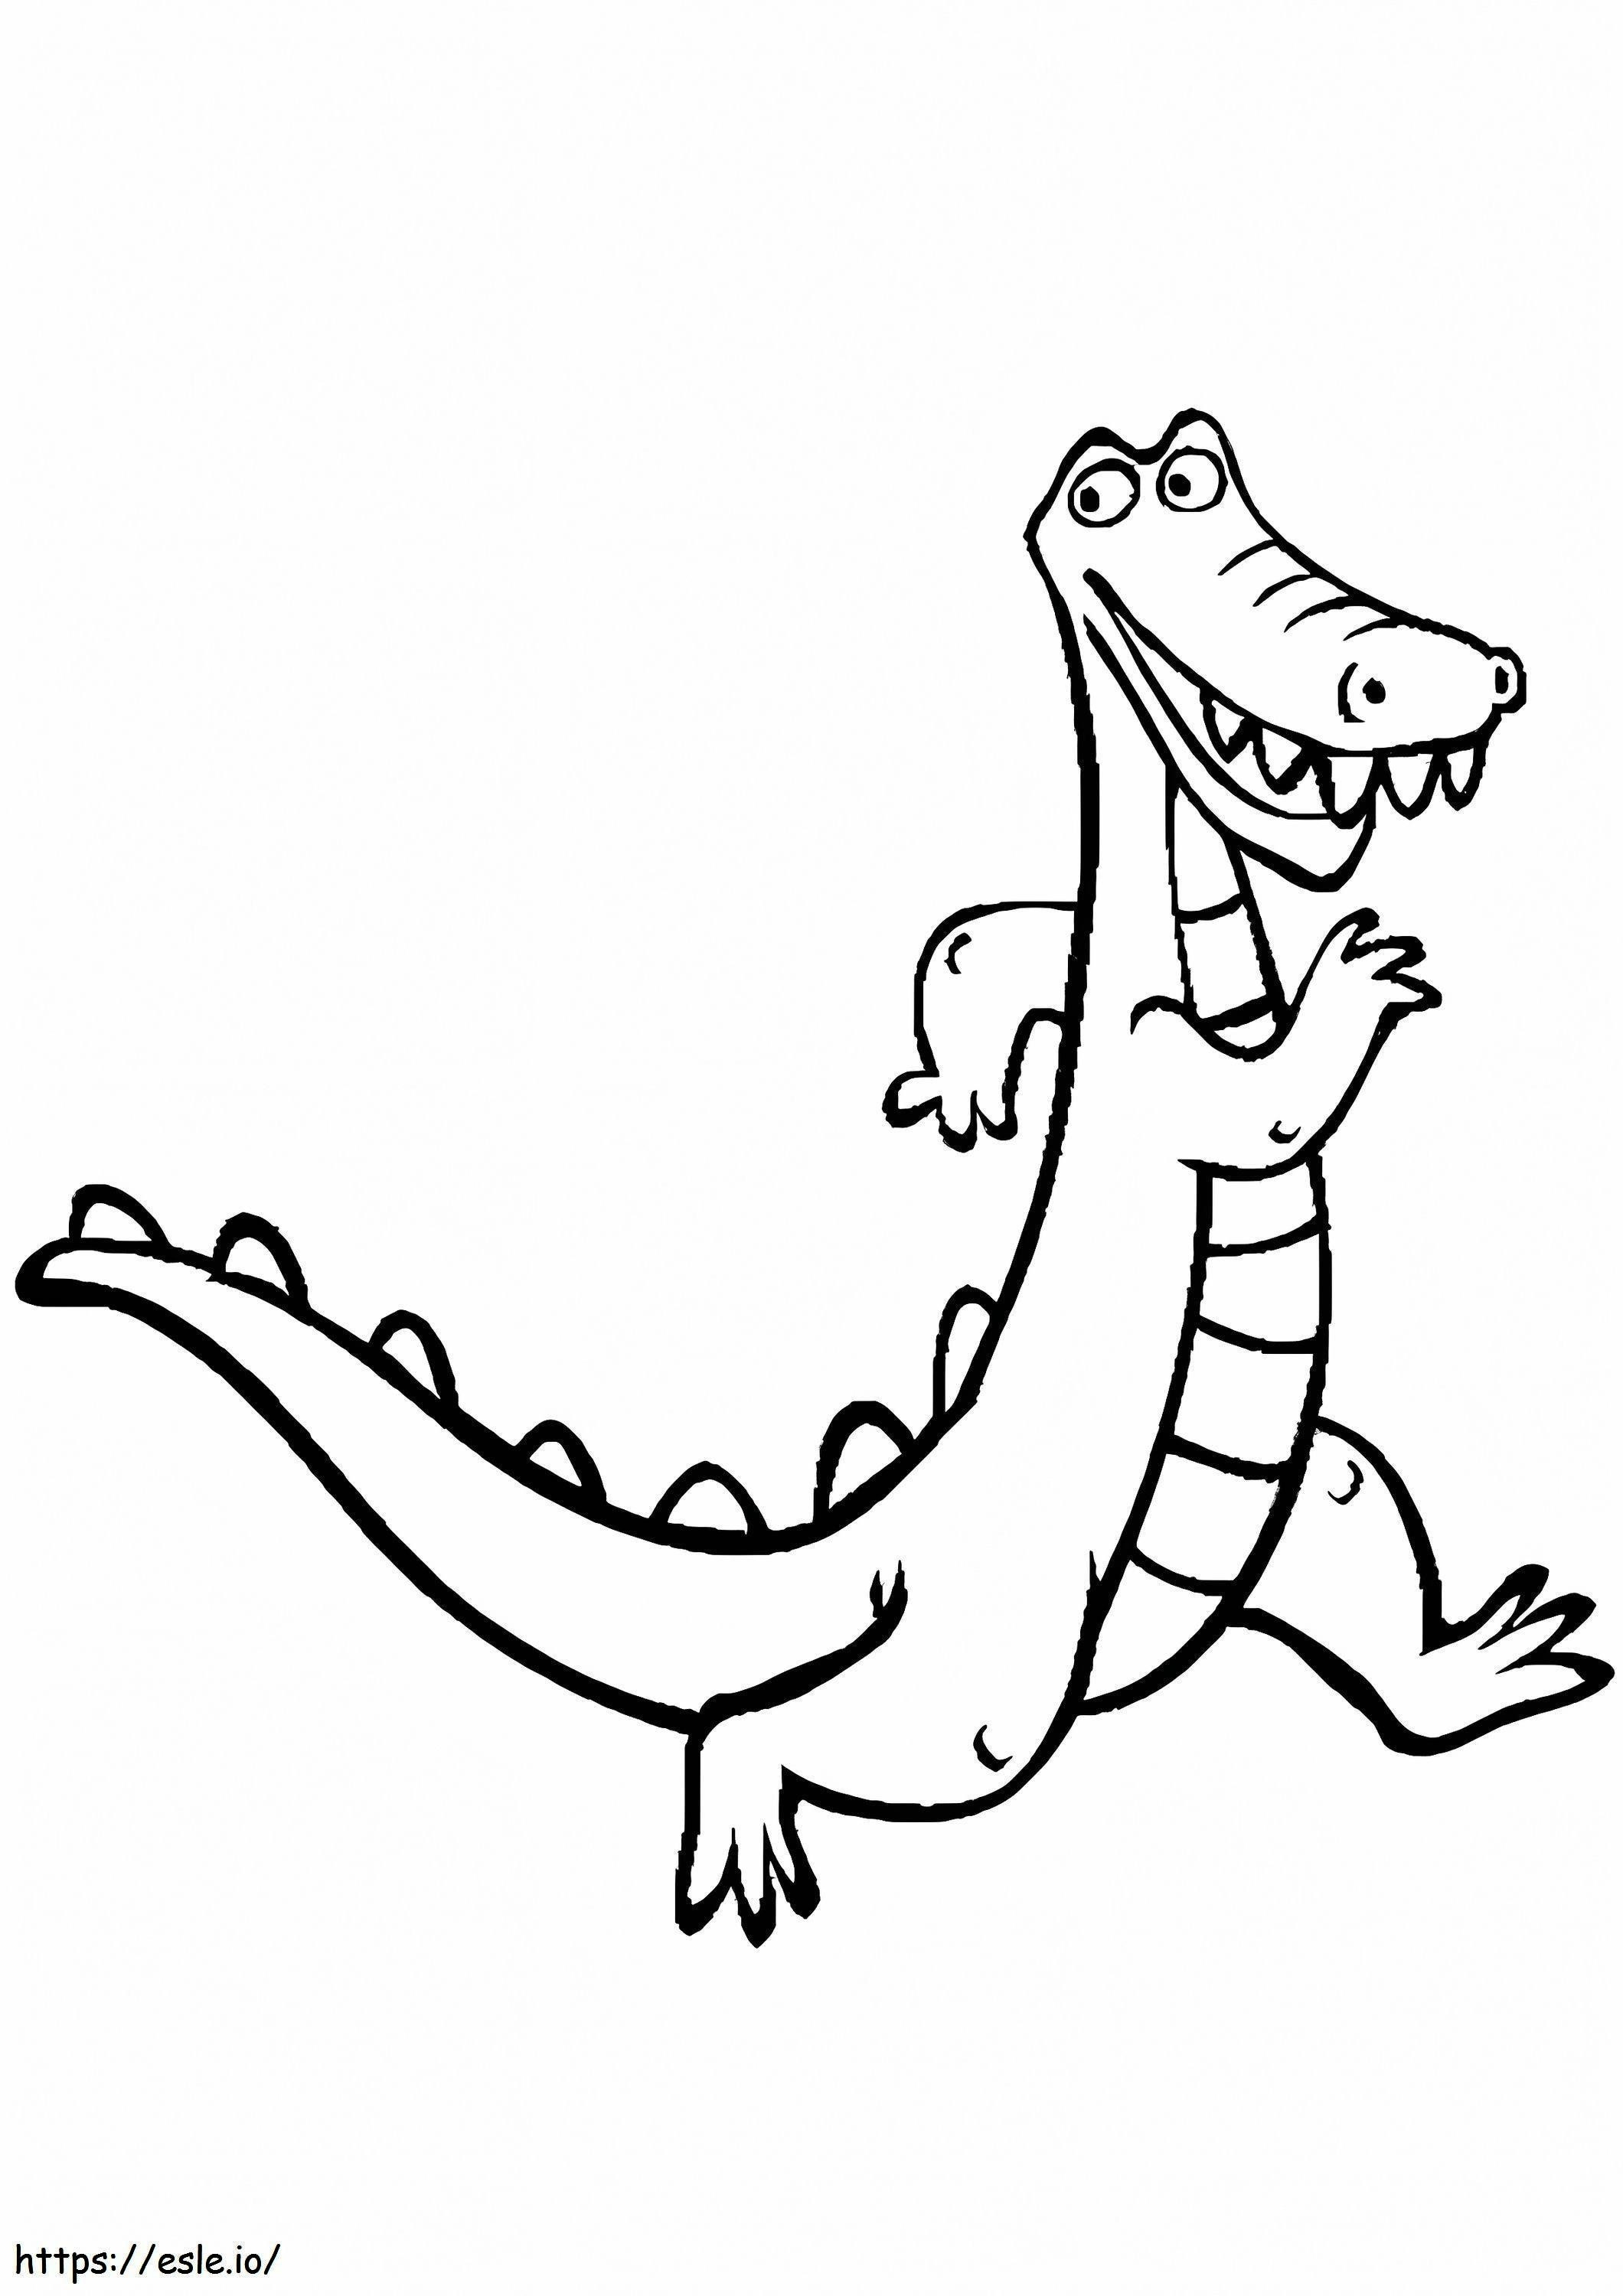 Cartoon Crocodile Walking coloring page